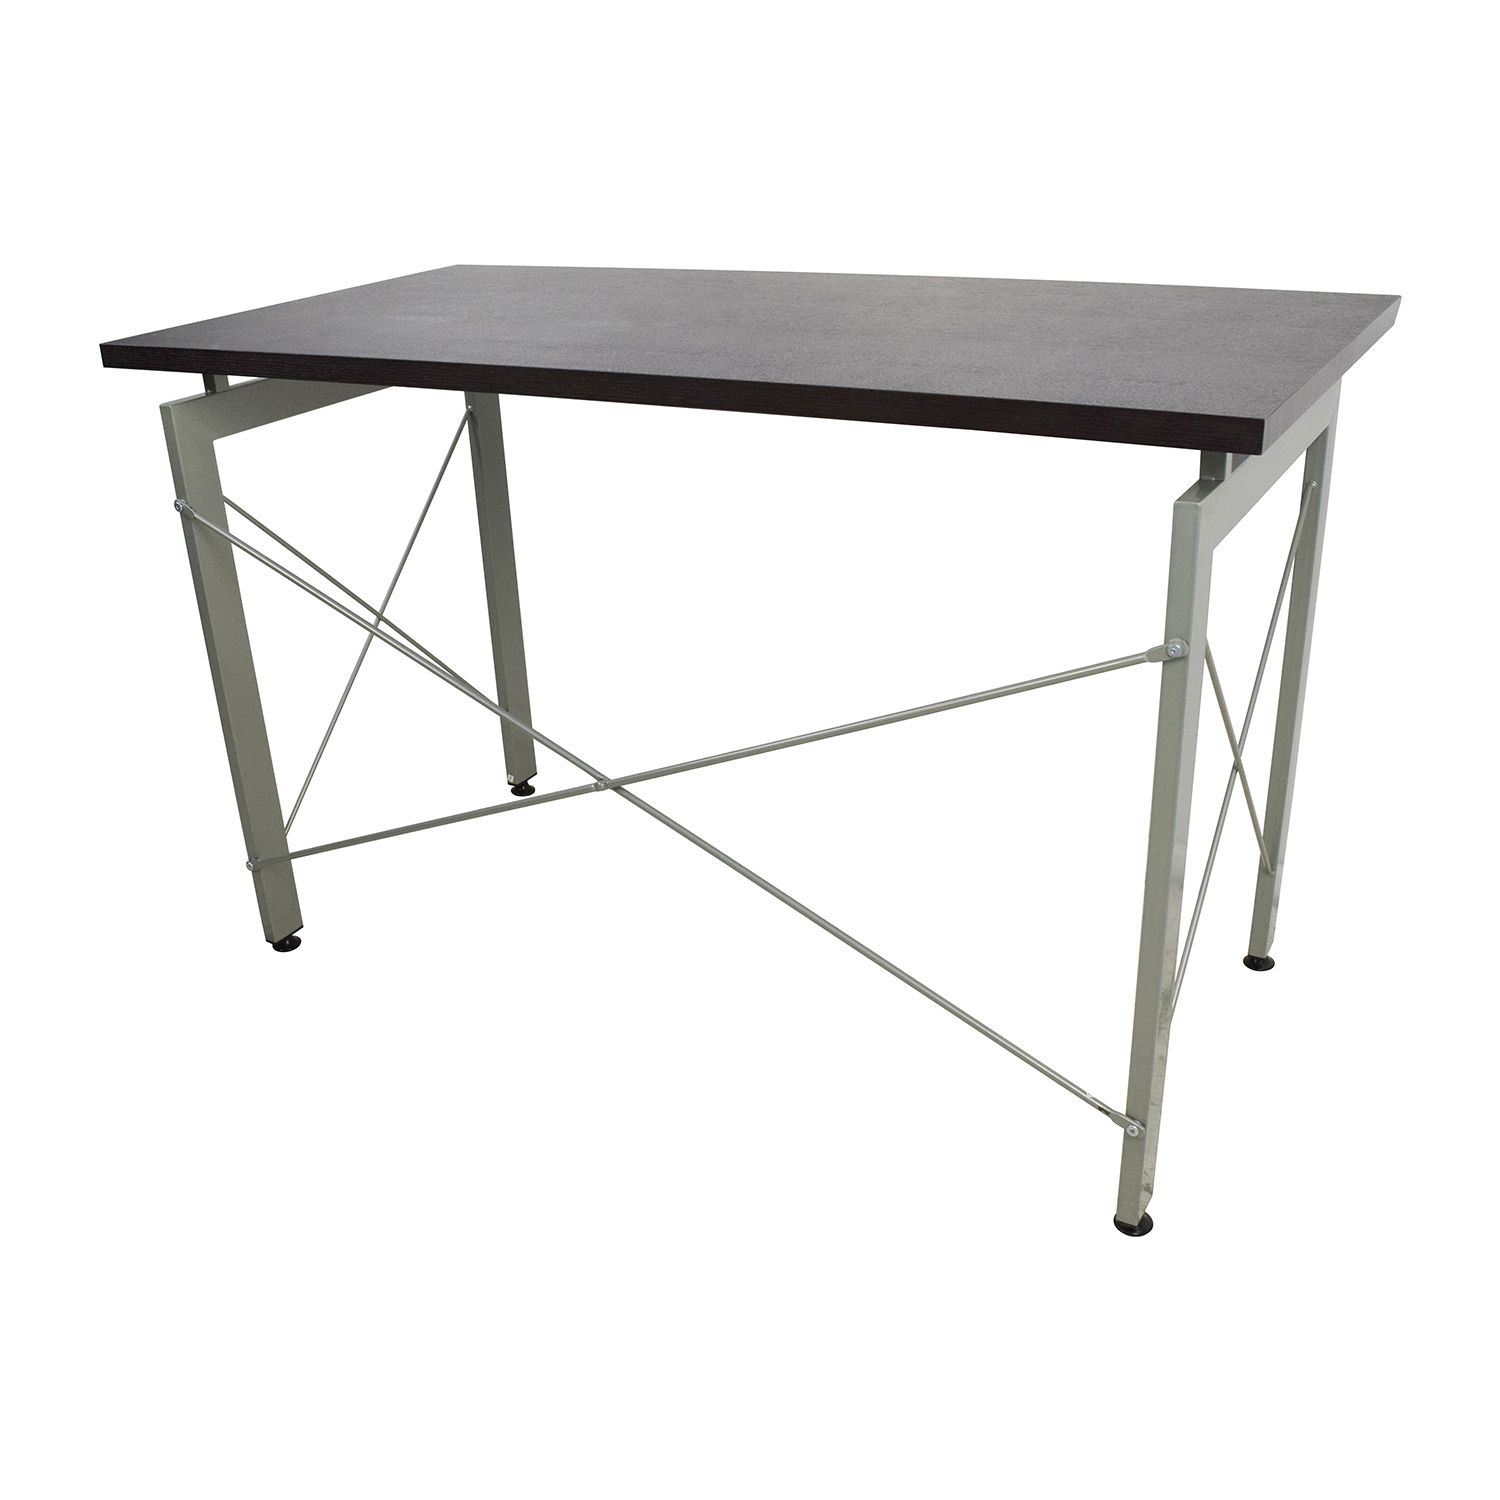 39% Off – Allmodern All Modern Wood And Metal Desk / Tables Inside Modern Teal Steel Desks (View 12 of 15)